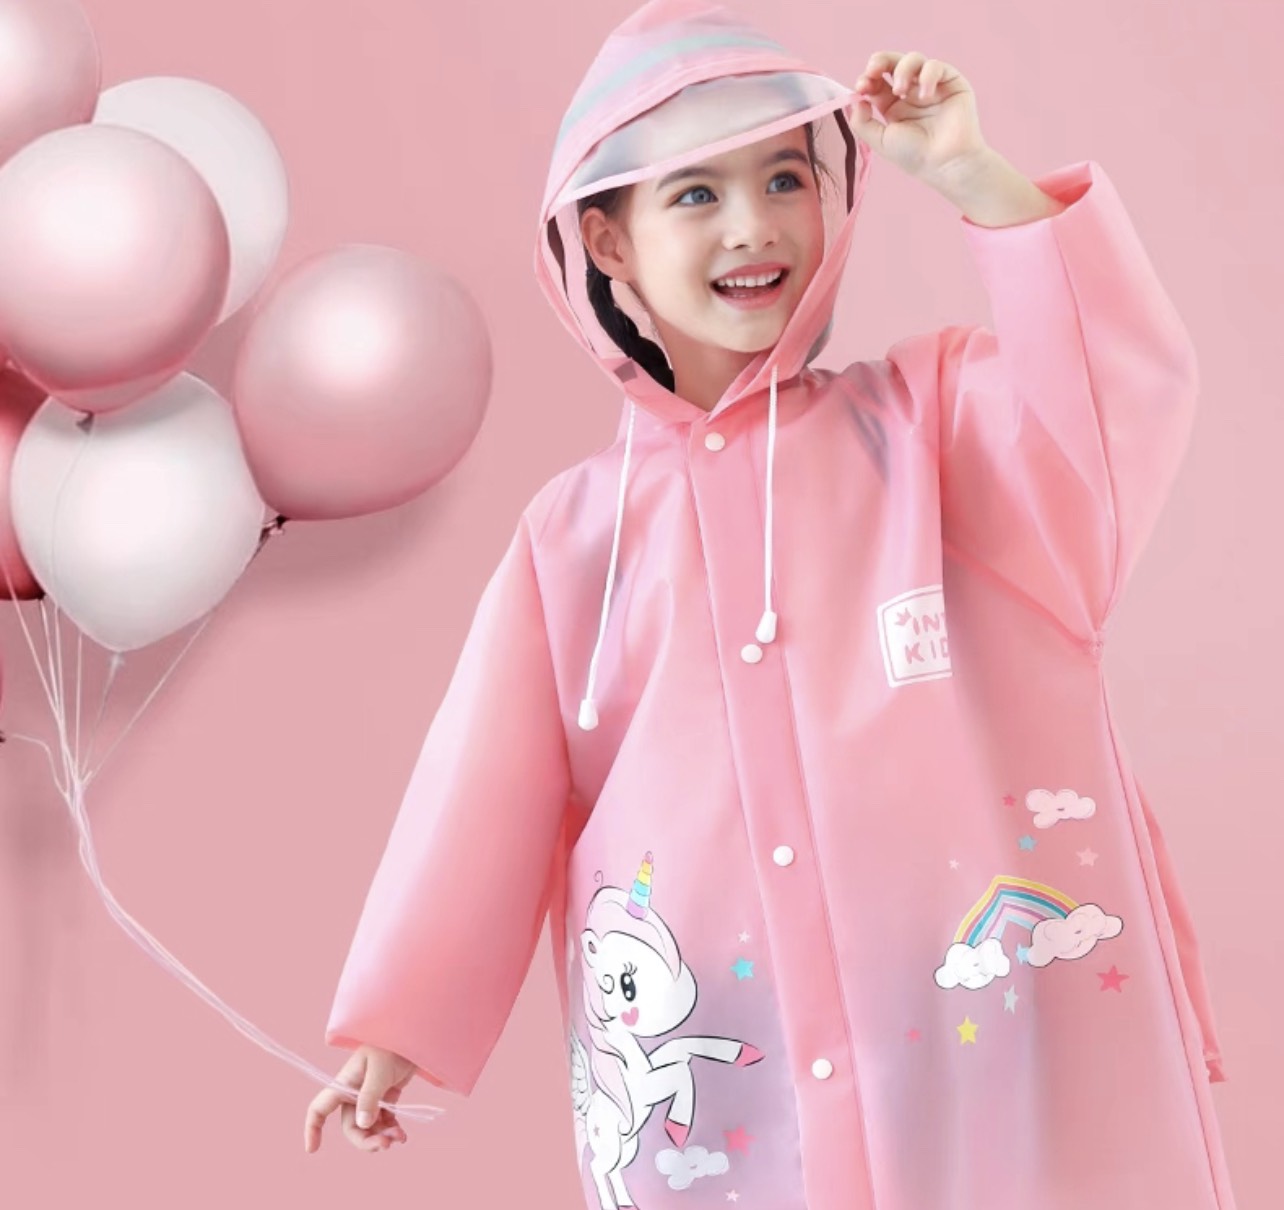 [ Khóa kéo] Áo mưa trẻ em cao cấp, thiết kế khóa kéo + nút bấm + ngăn đựng balo, chất liệu Eva nhẹ bền, chống thấm nước